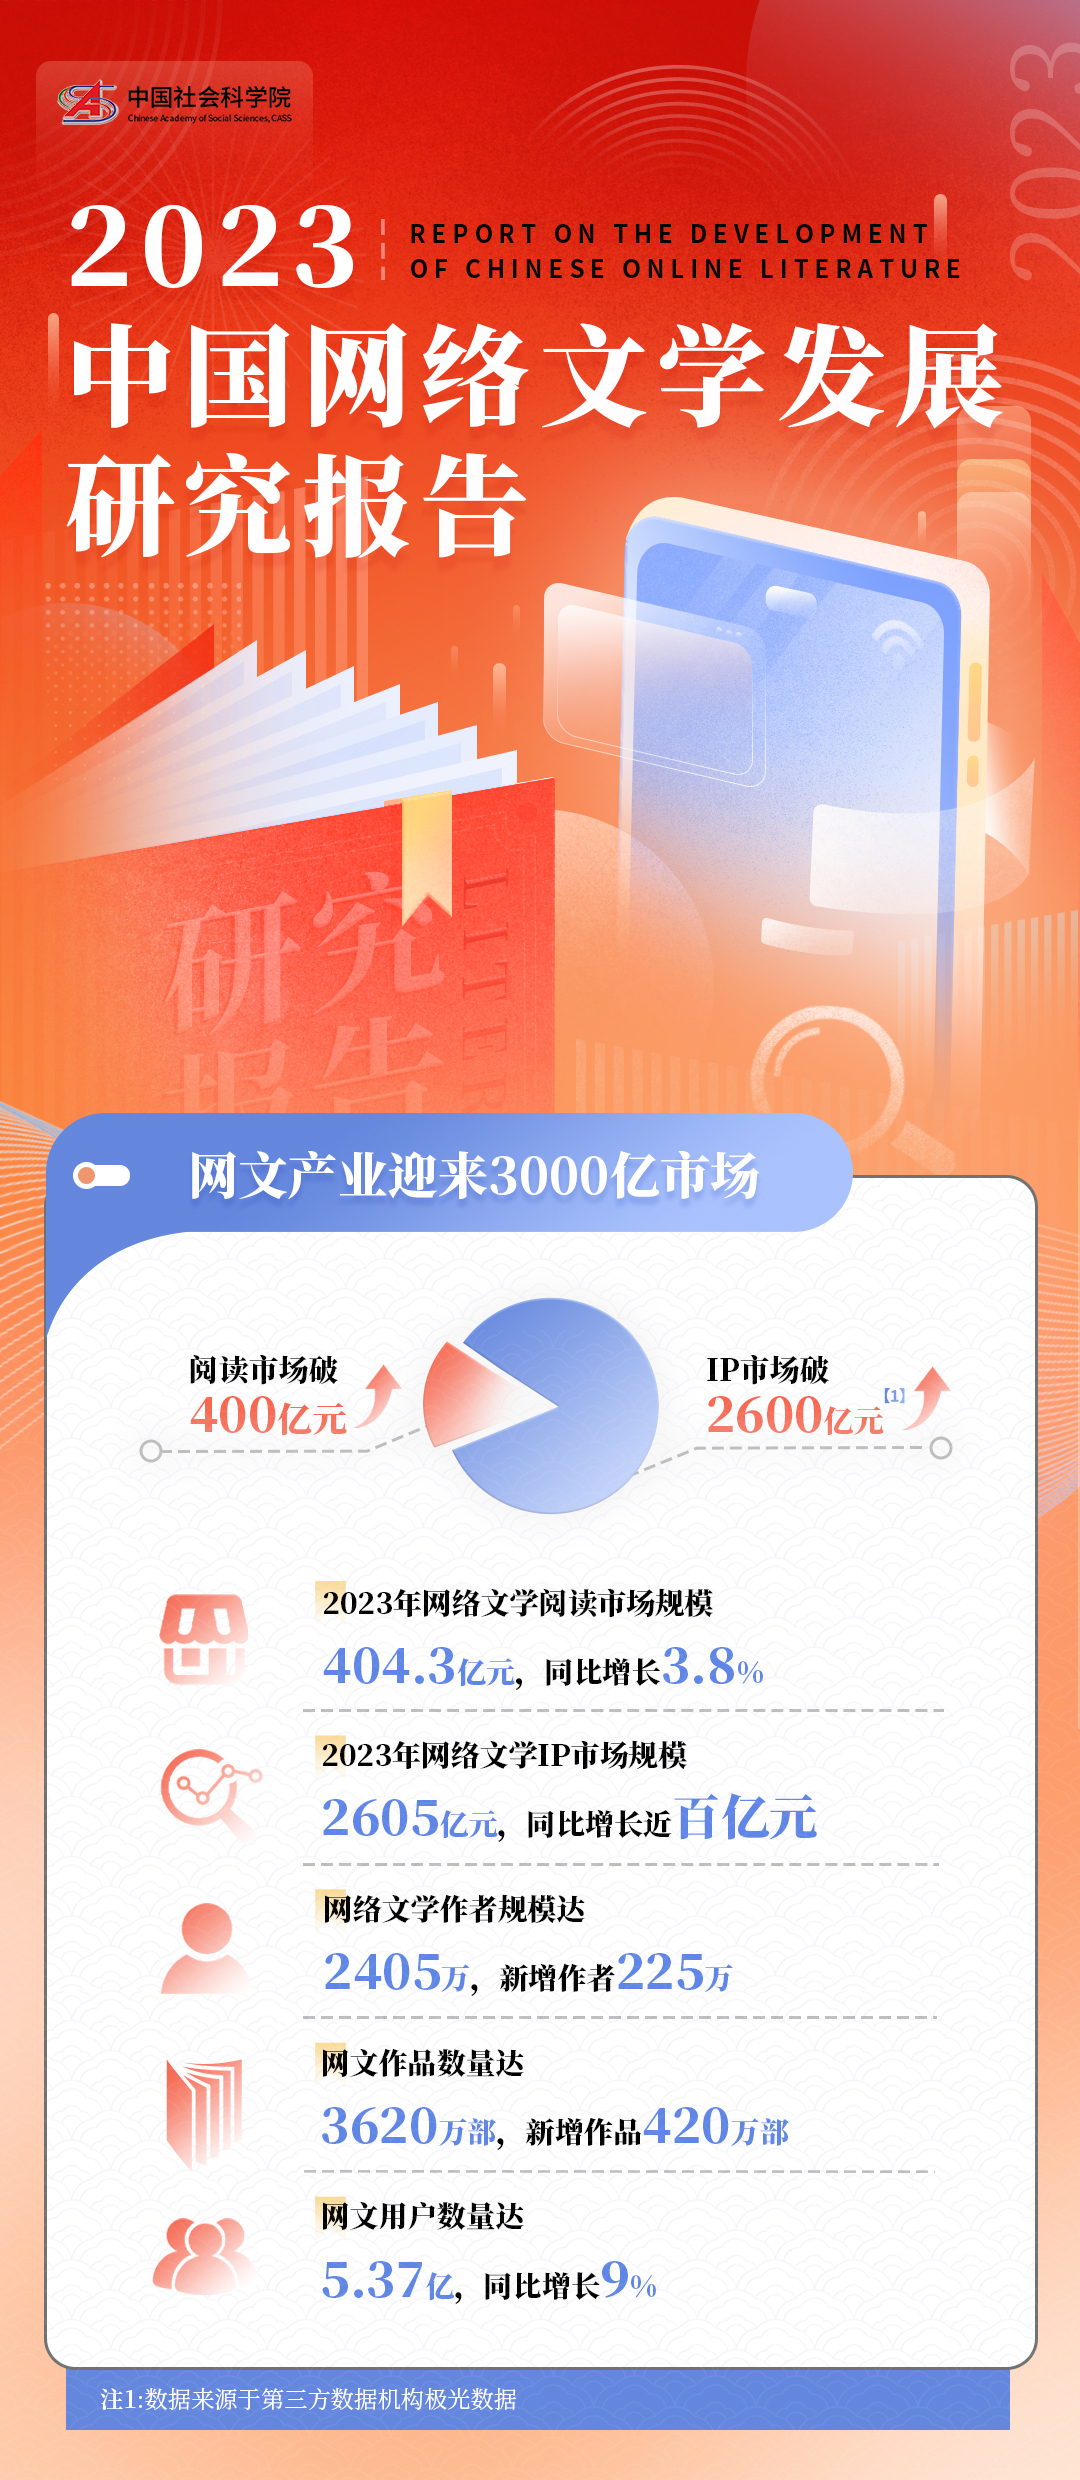 2023年中国网络文学发展研究报告5188开元棋官网